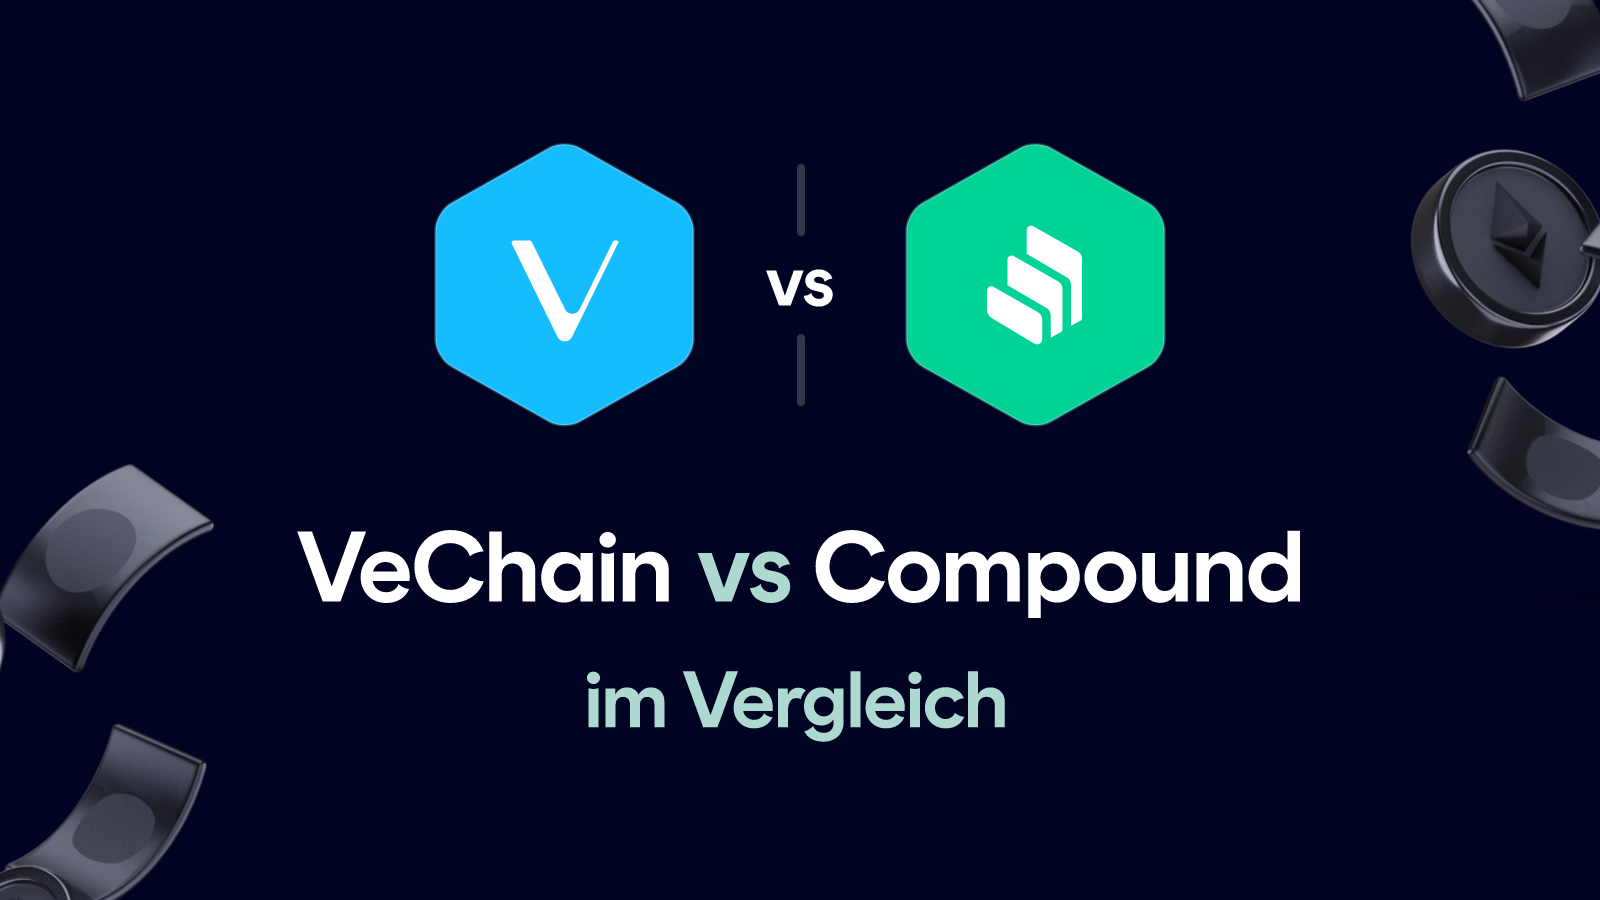 VeChain vs Compound